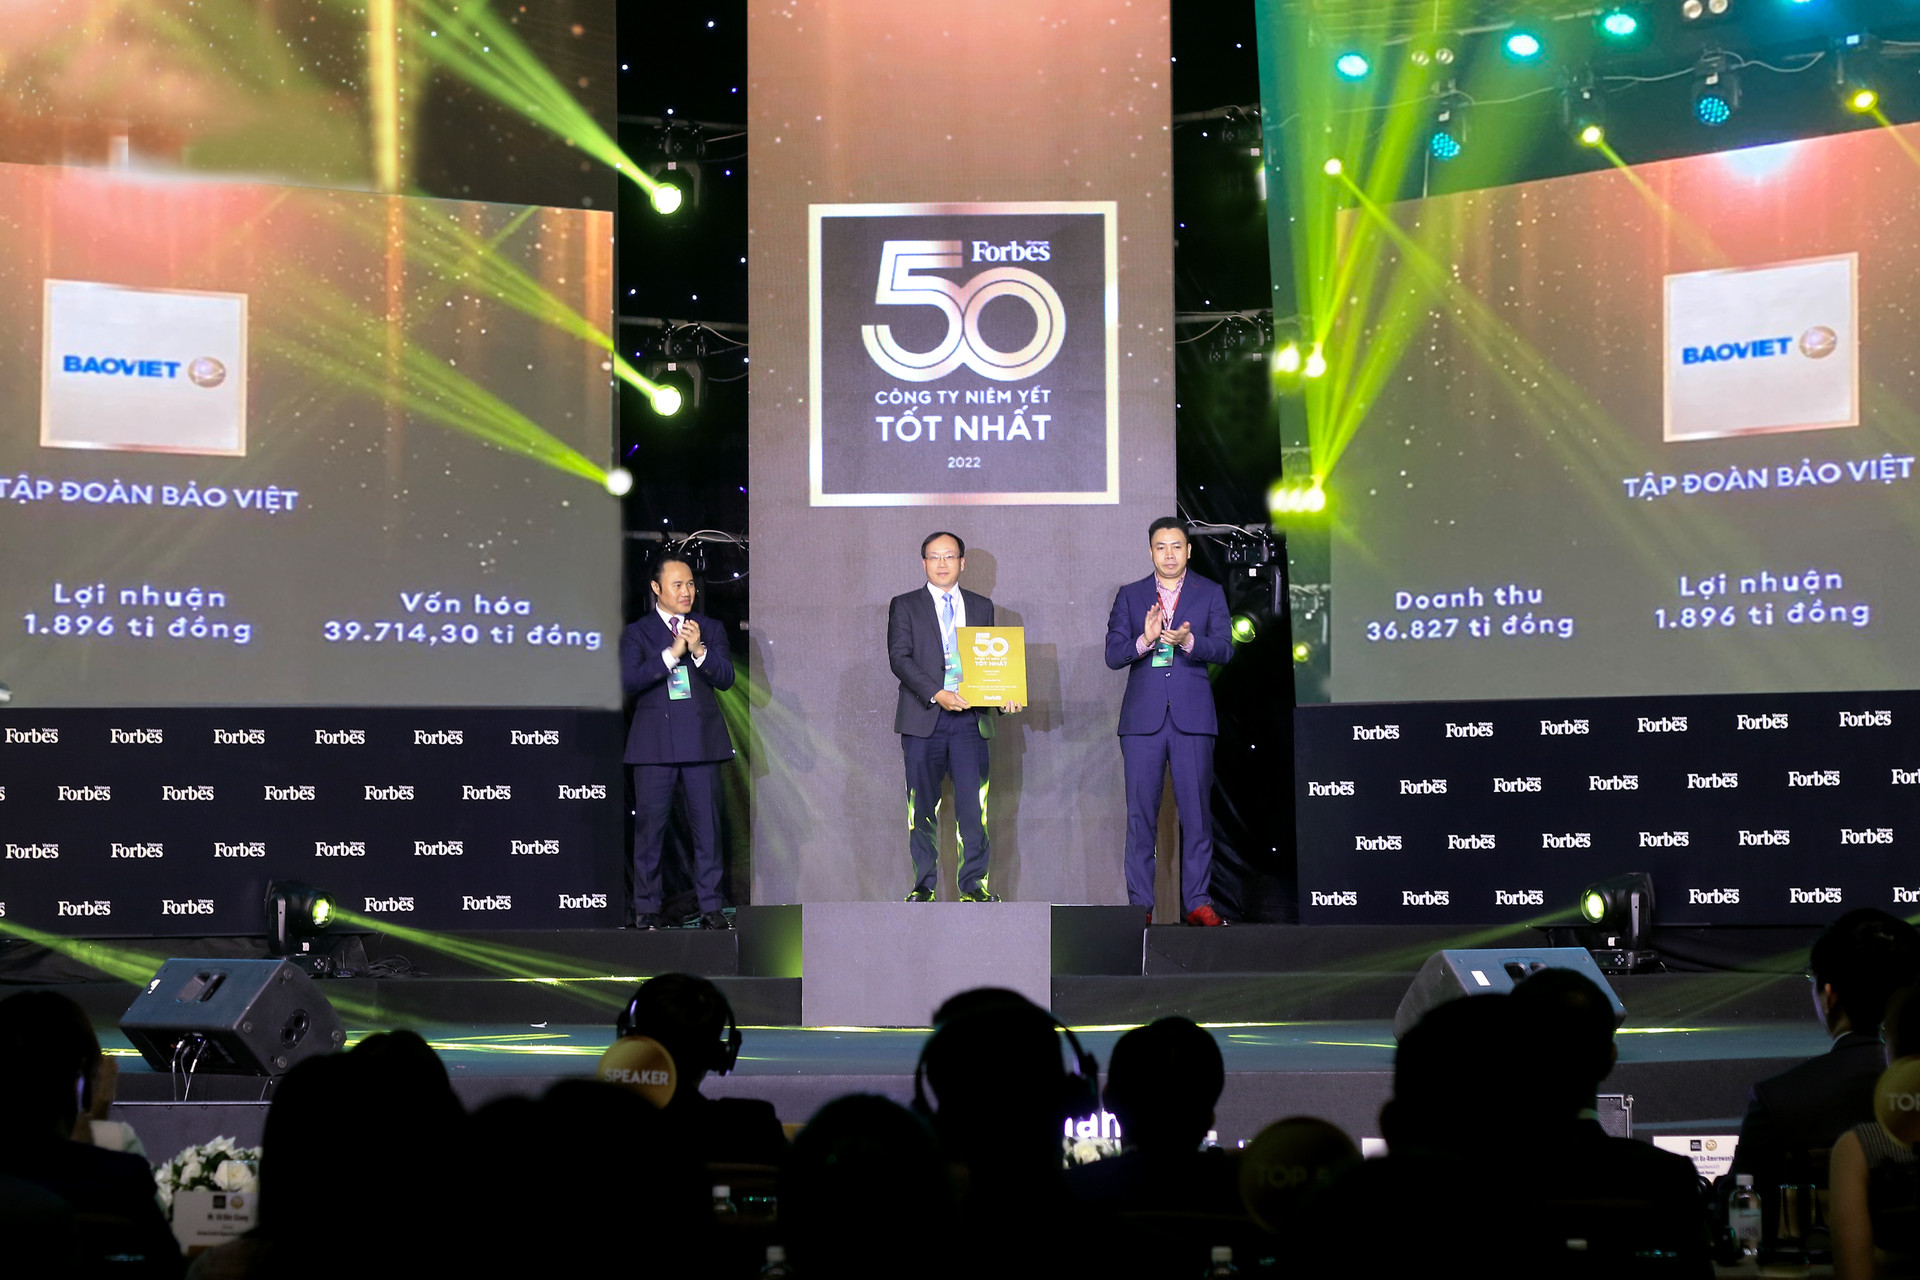 Bảo Việt 10 năm liên tiếp lọt danh sách 50 công ty niêm yết tốt nhất - 2